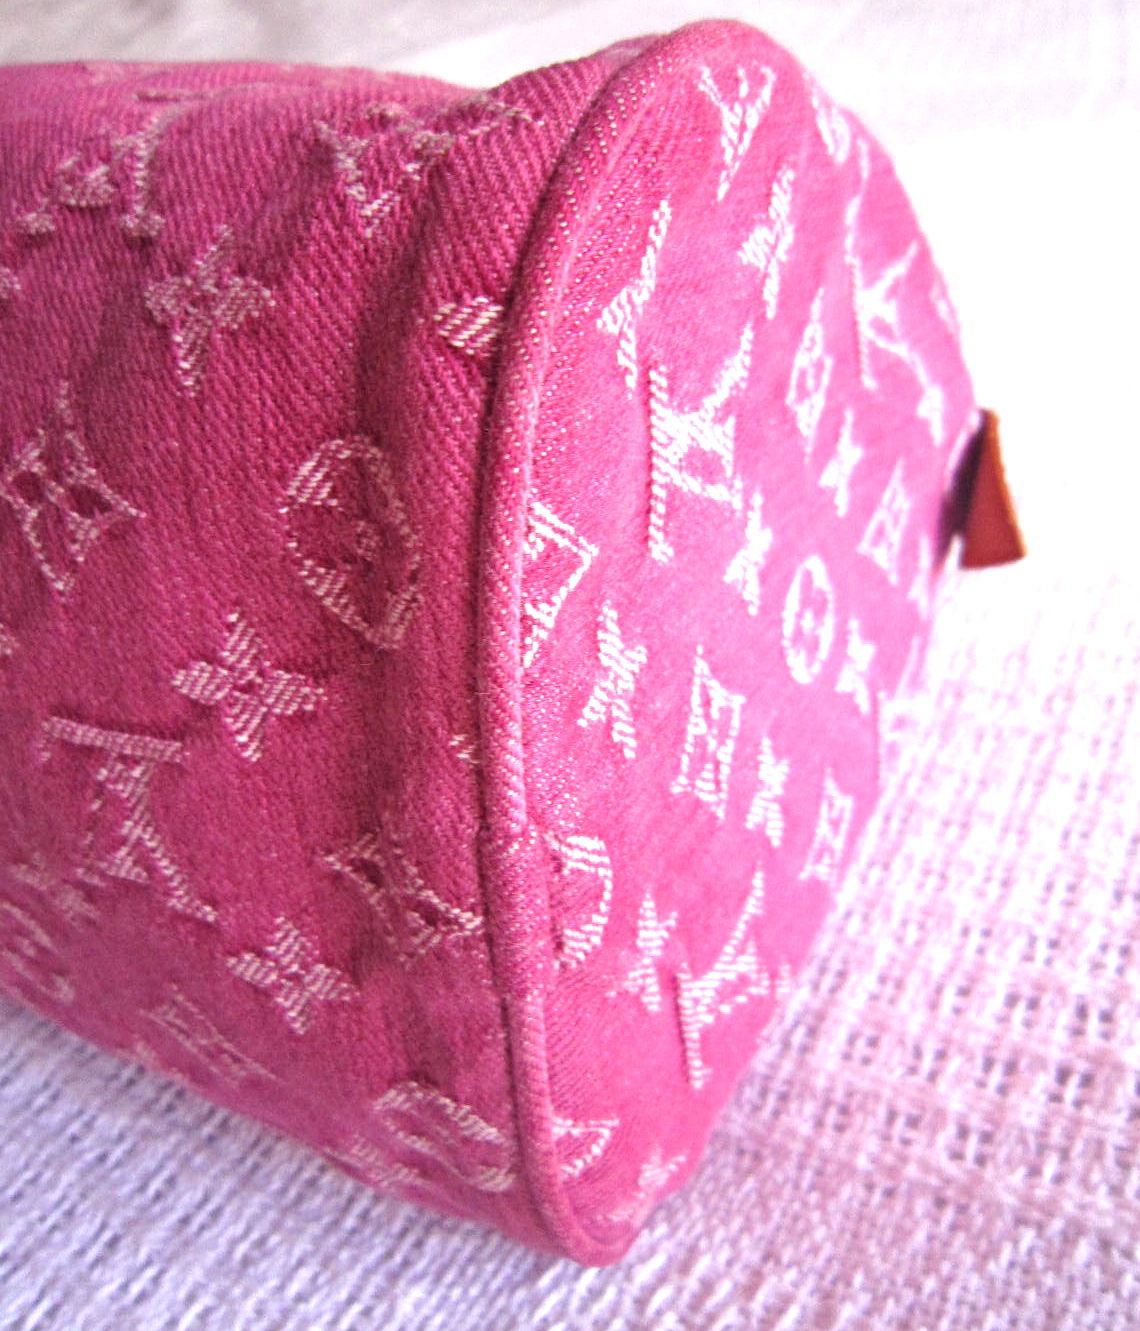 Louis Vuitton Louis Vuitton Pink Monogram Denim Neo Speedy Handbag